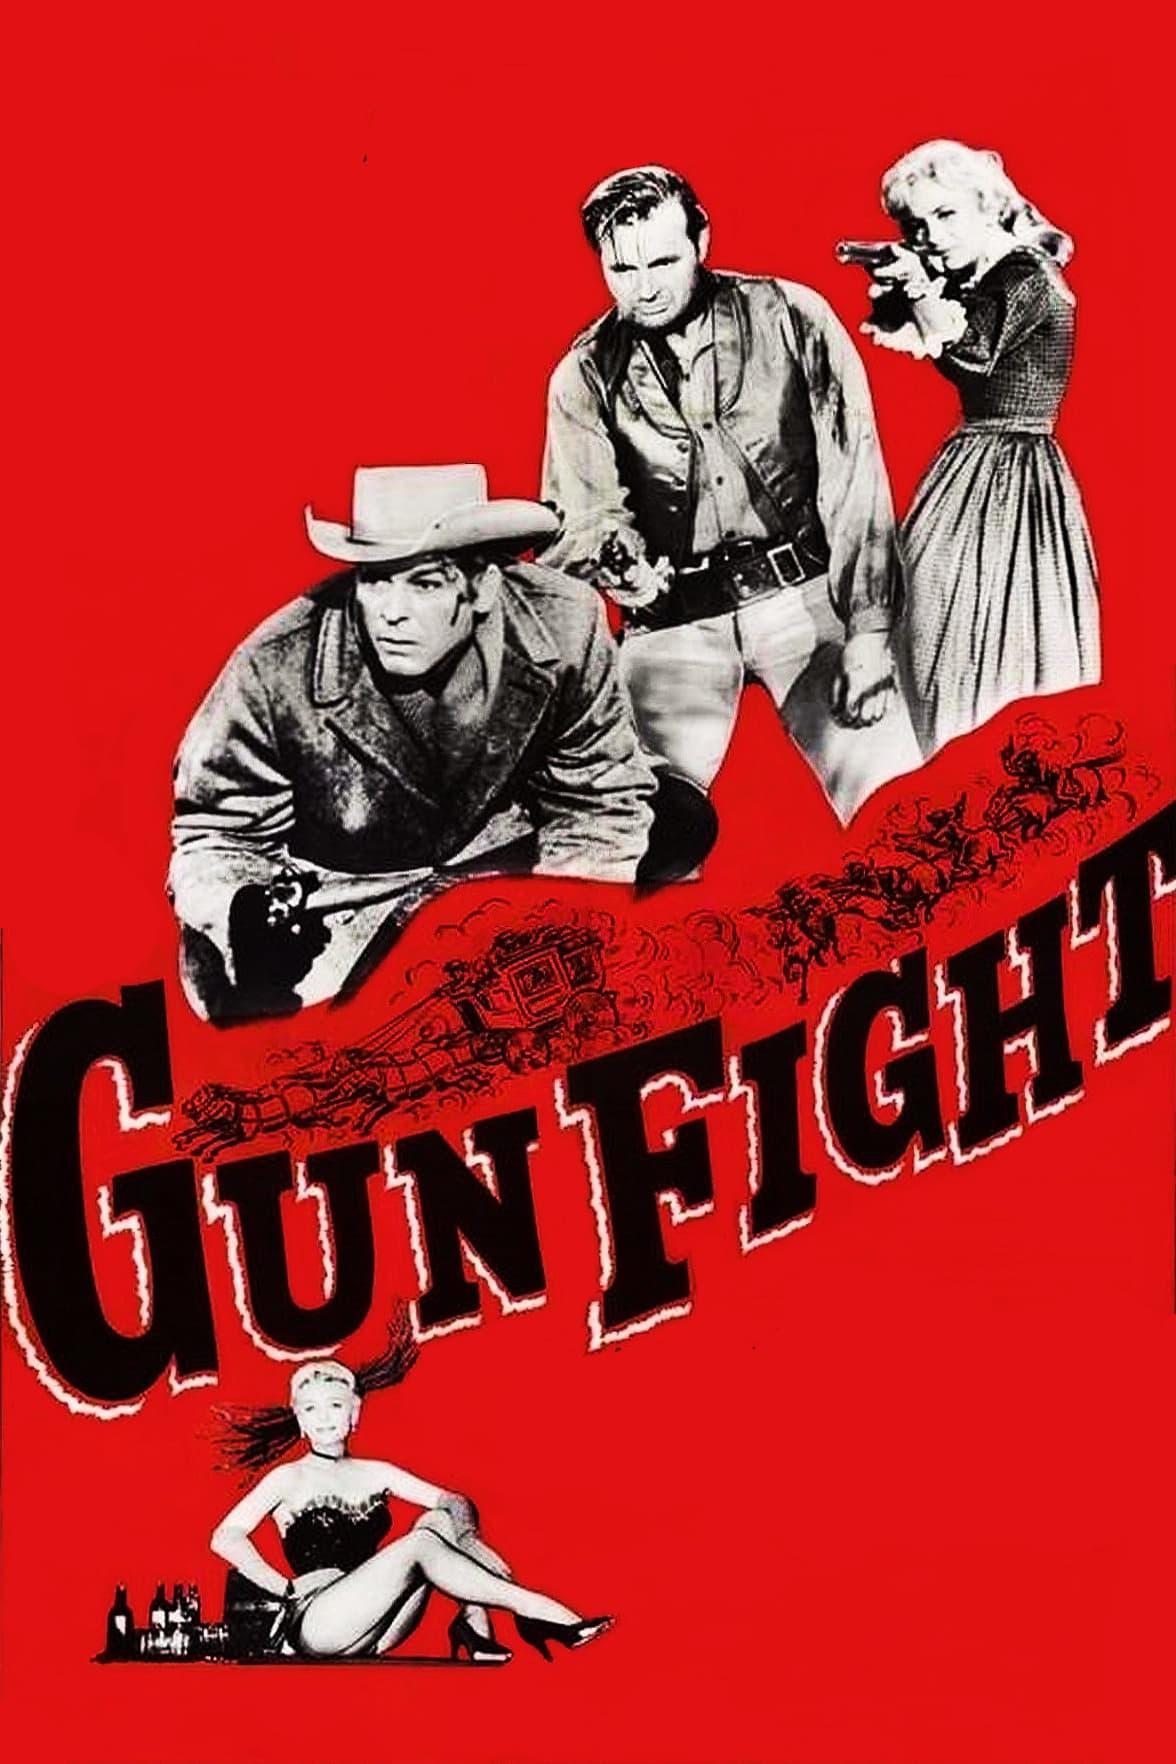 Gun Fight poster